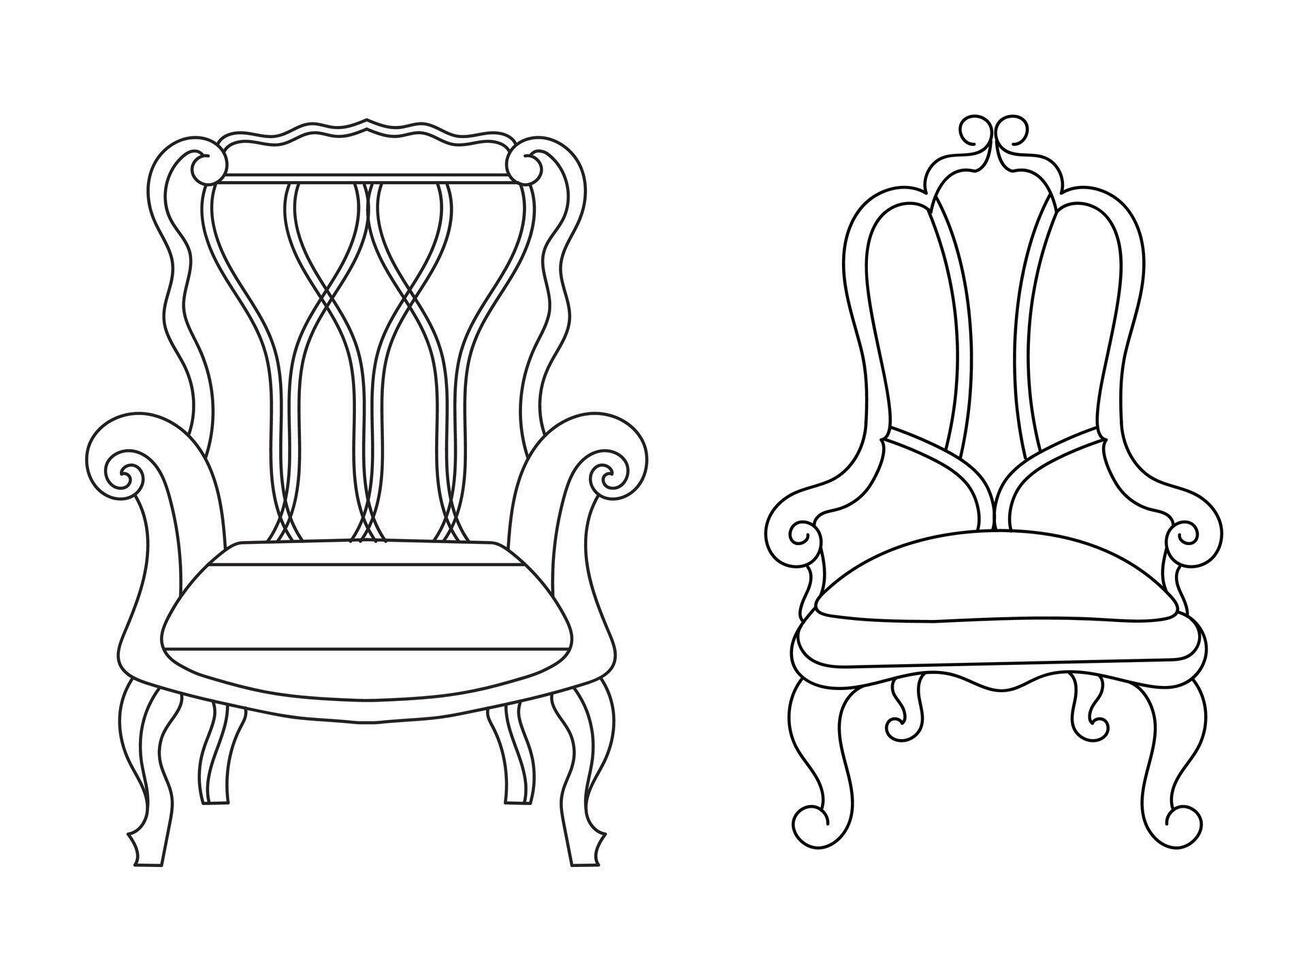 moderno mueble Sillón hogar, continuo línea dibujo ejecutivo oficina silla concepto, sofá silla vector ilustración